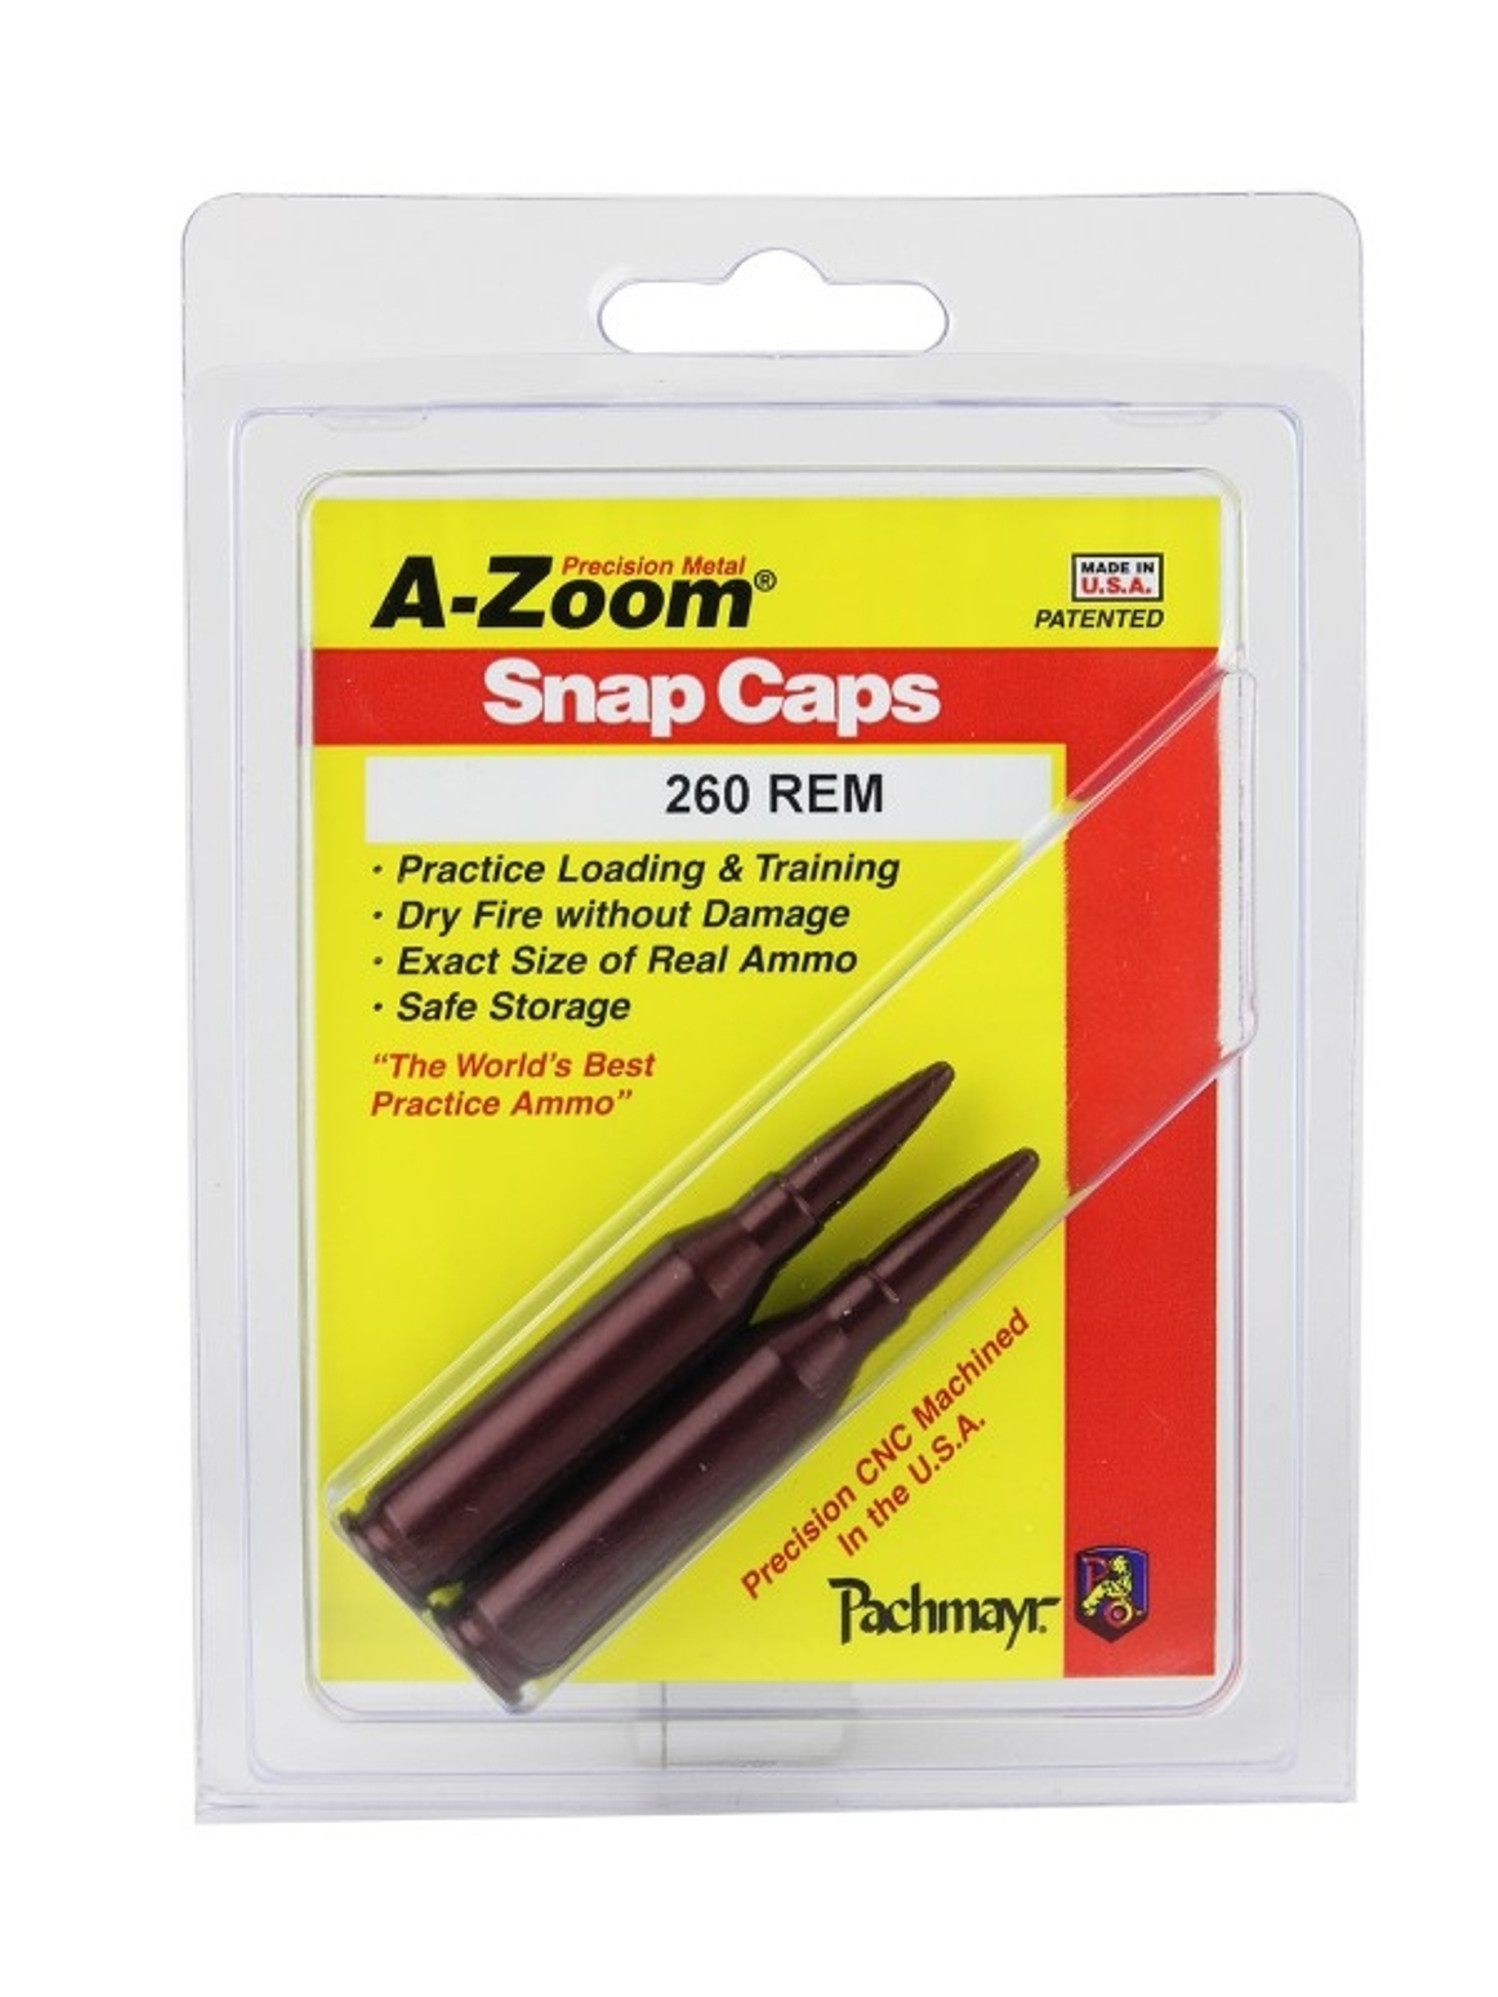 A-Zoom 260 REM Snap Caps